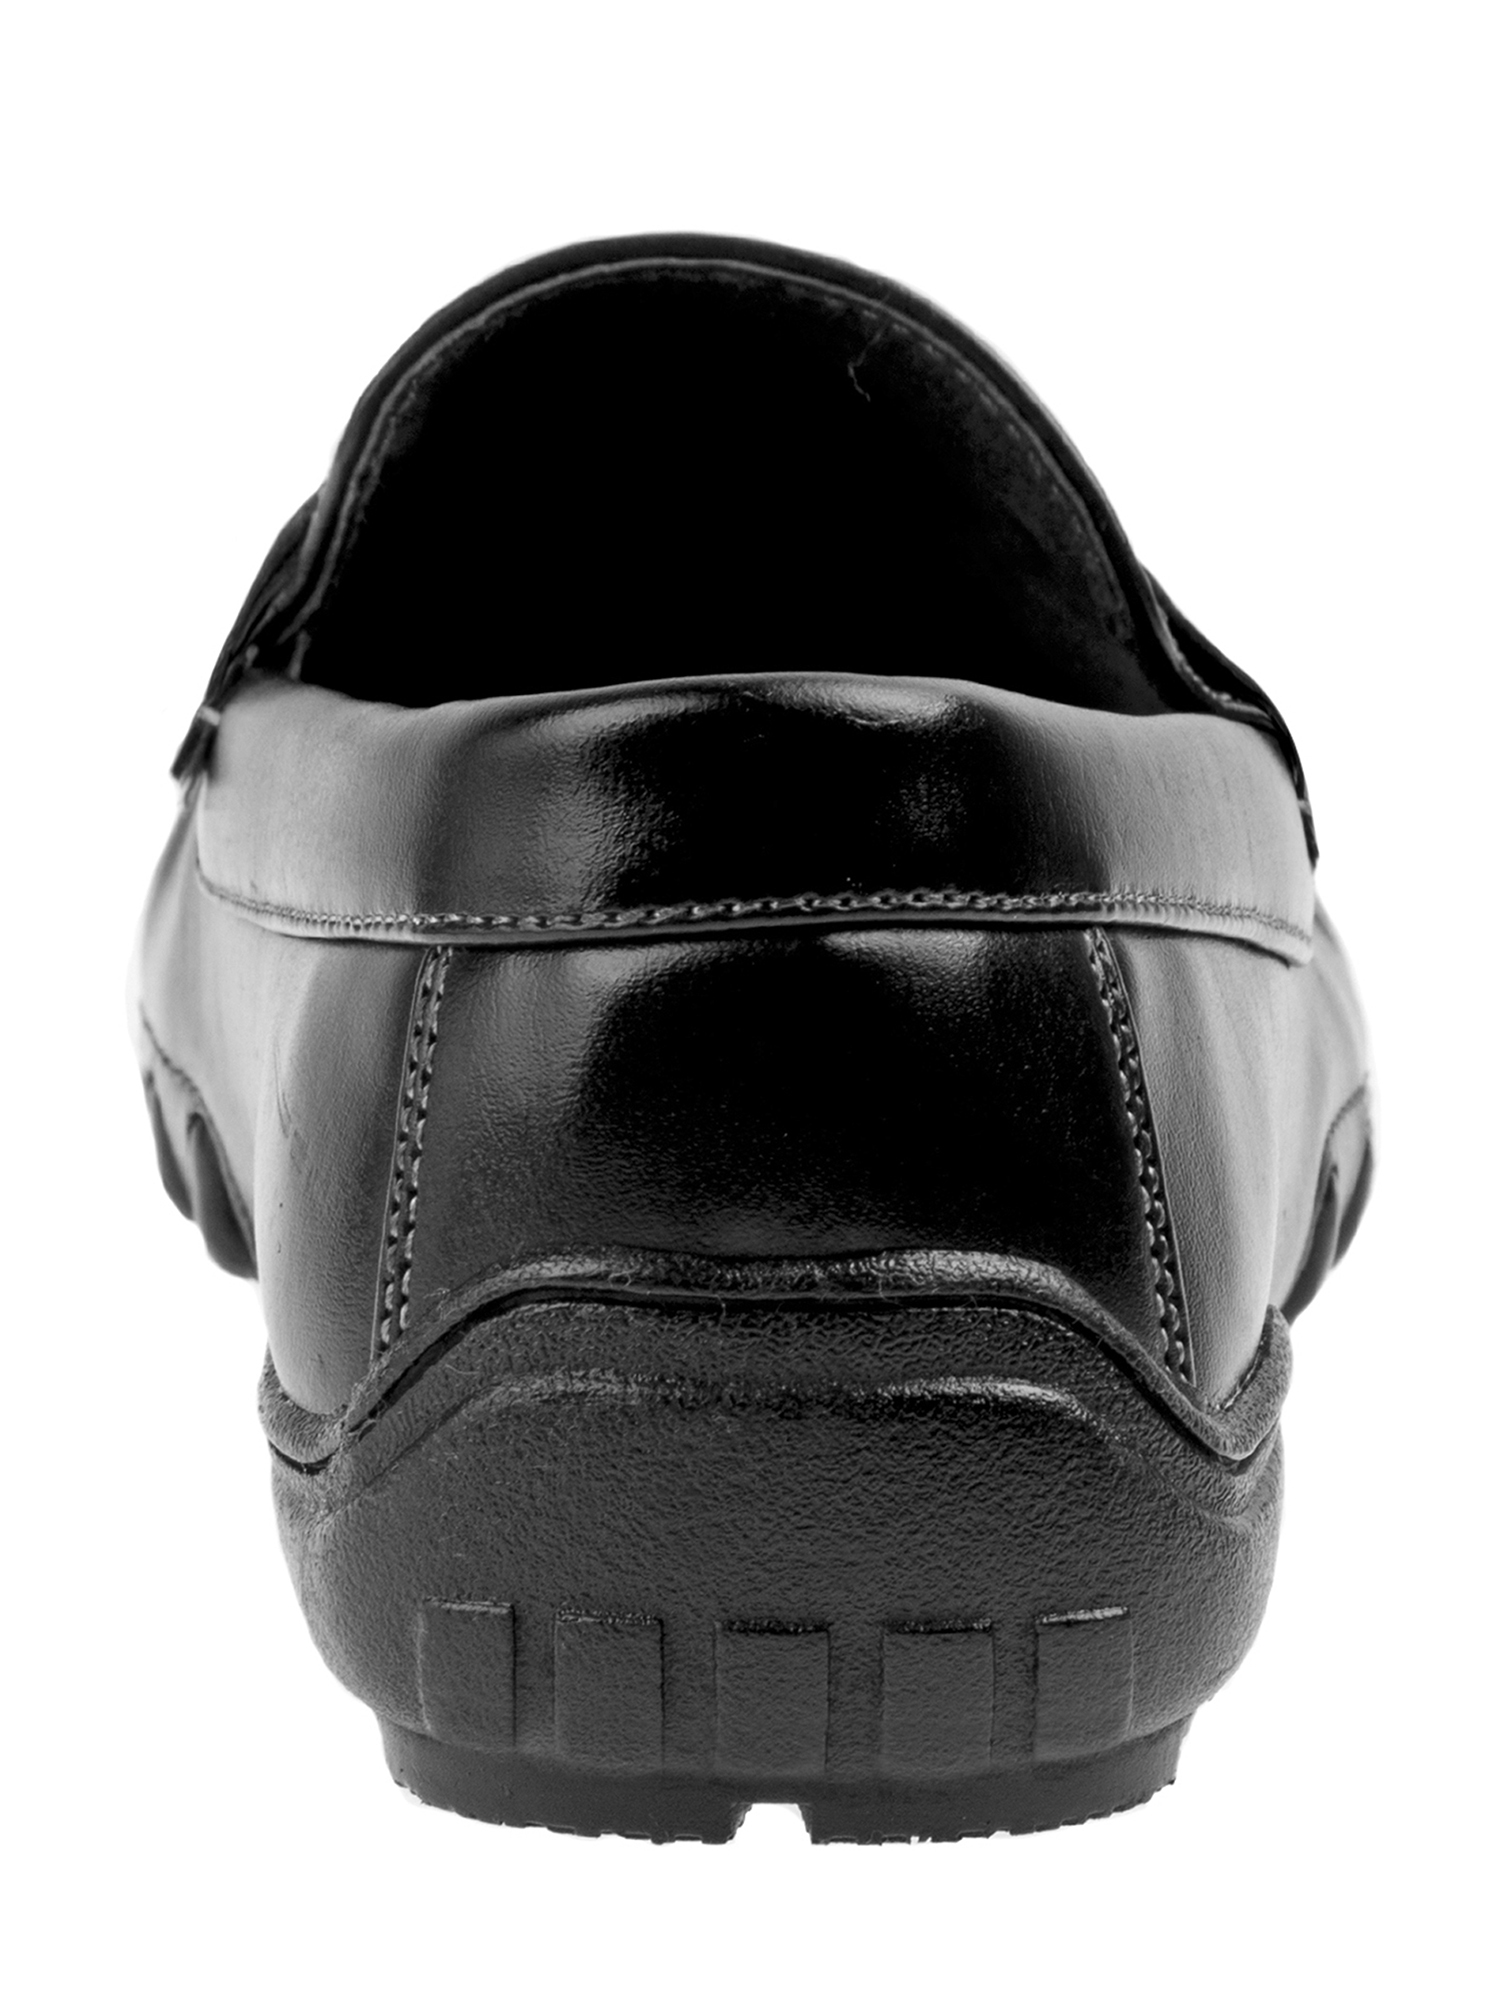 Joseph Allen Boys' Dress Shoes - image 2 of 7